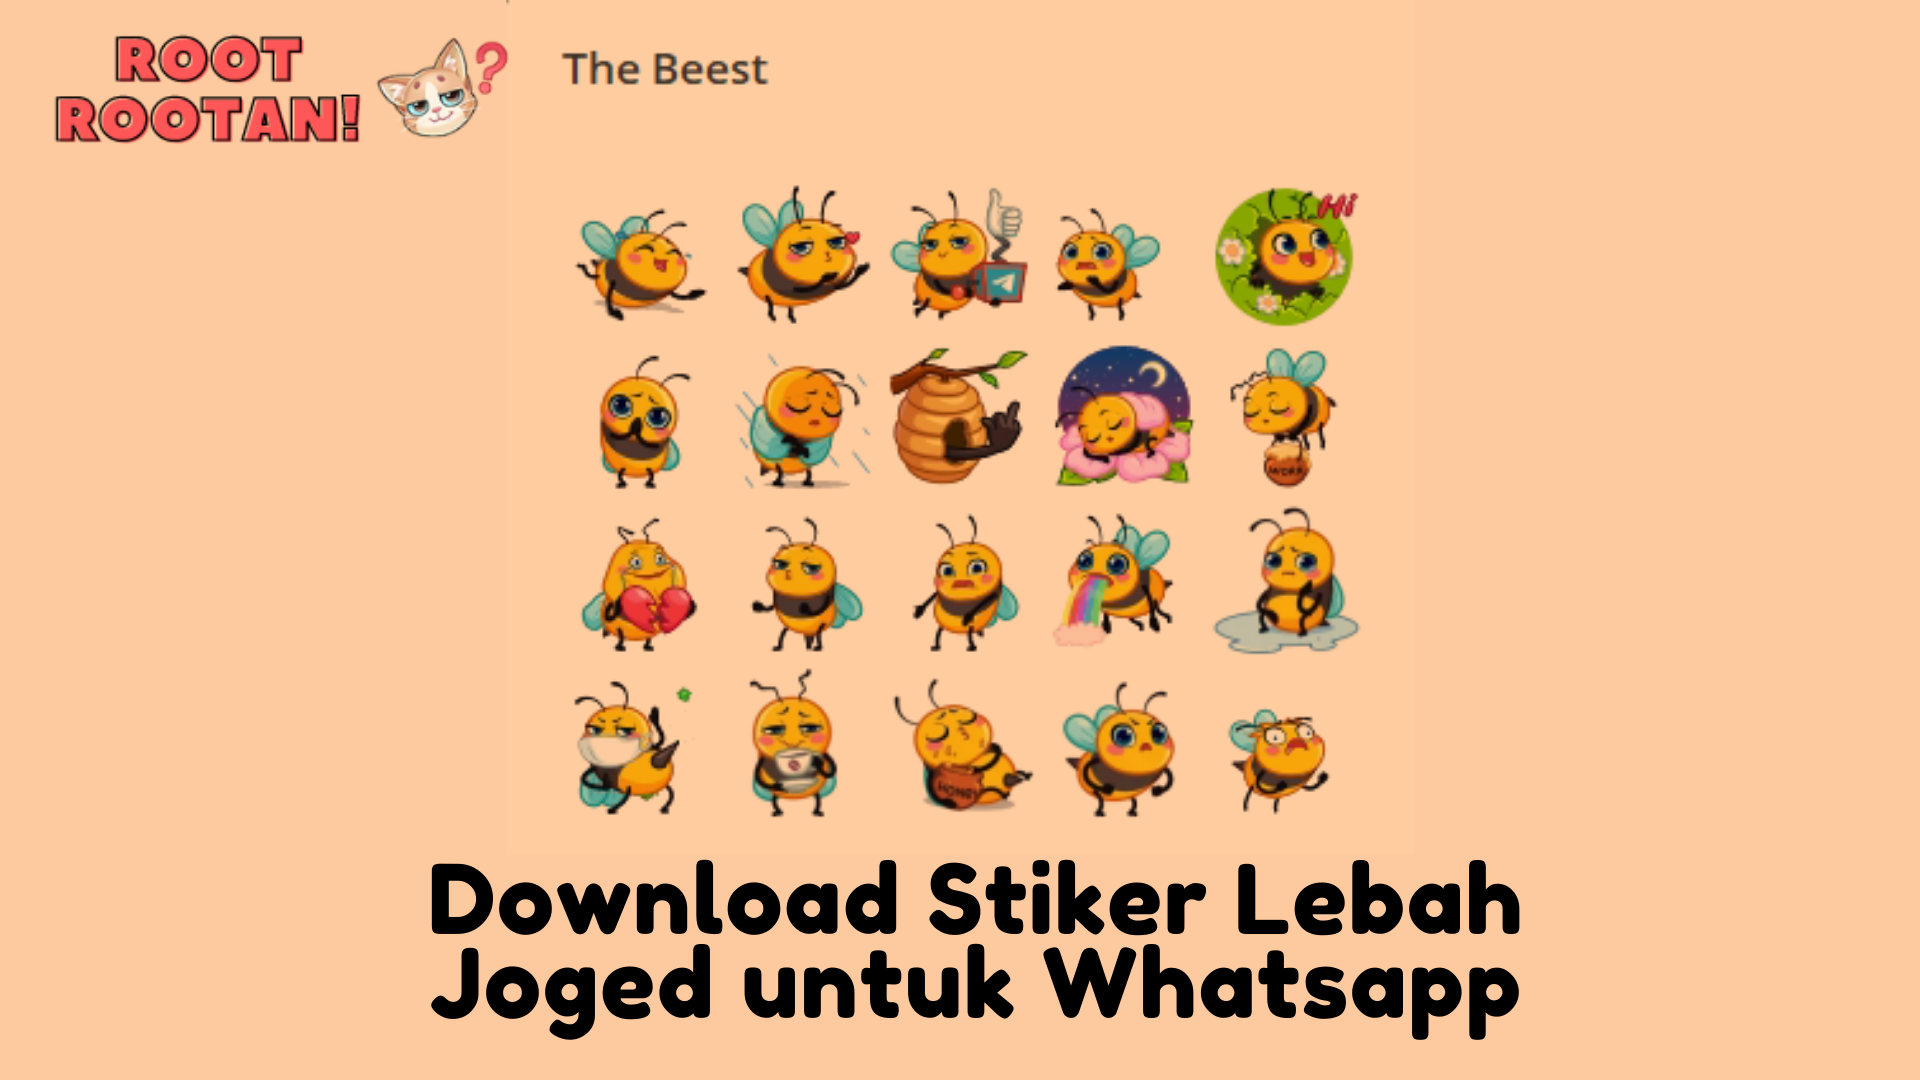 Download Stiker Lebah Joged untuk Whatsapp (1)